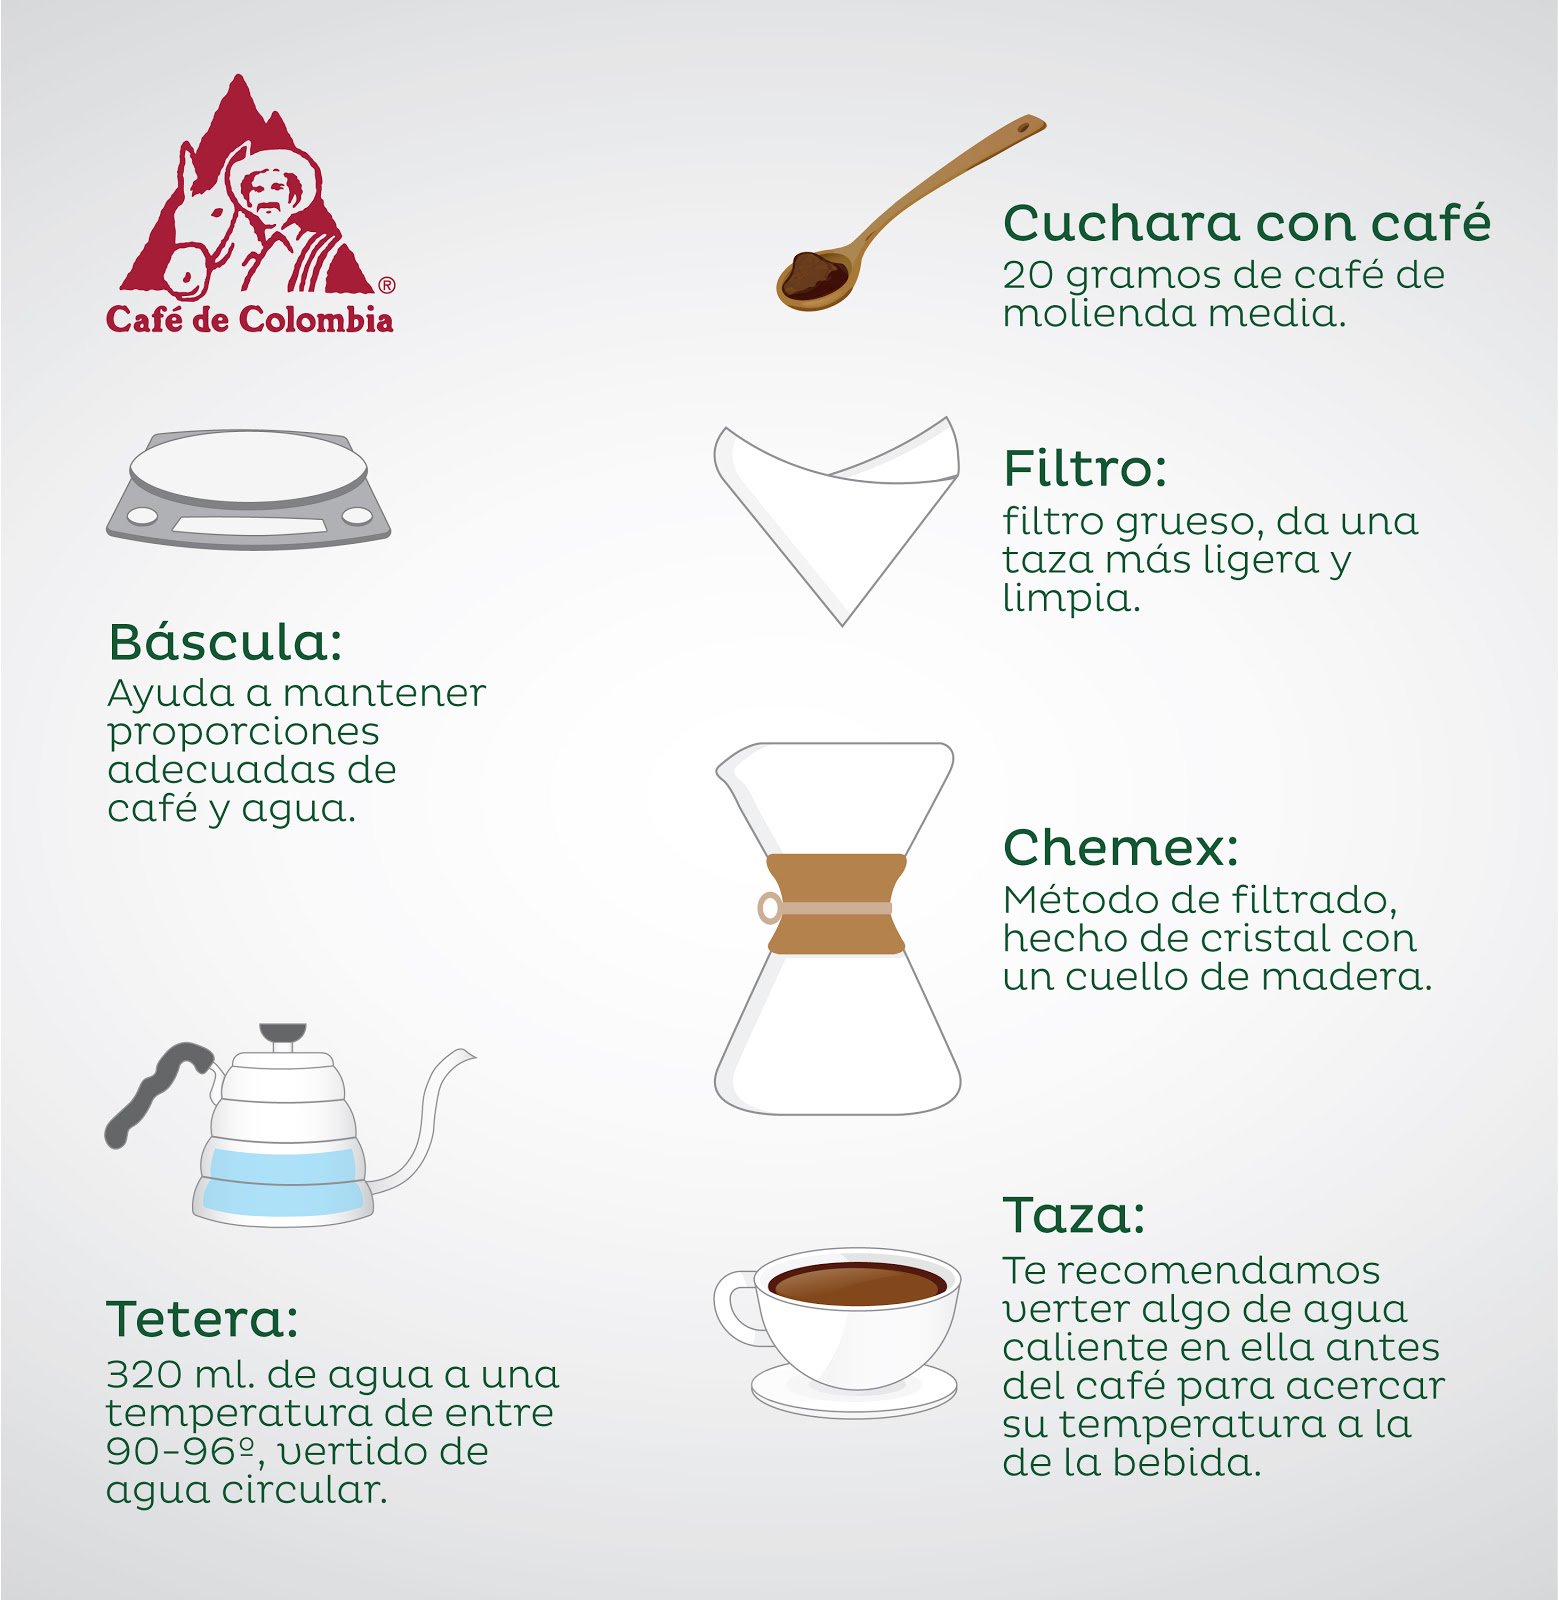 Café de Colombia on X: ¿Tienes un Chemex en casa o estás pensando en  comprar uno? ¡Aquí está lo que necesitas para preparar una buena taza de  #CaféDeColombia en uno!  /